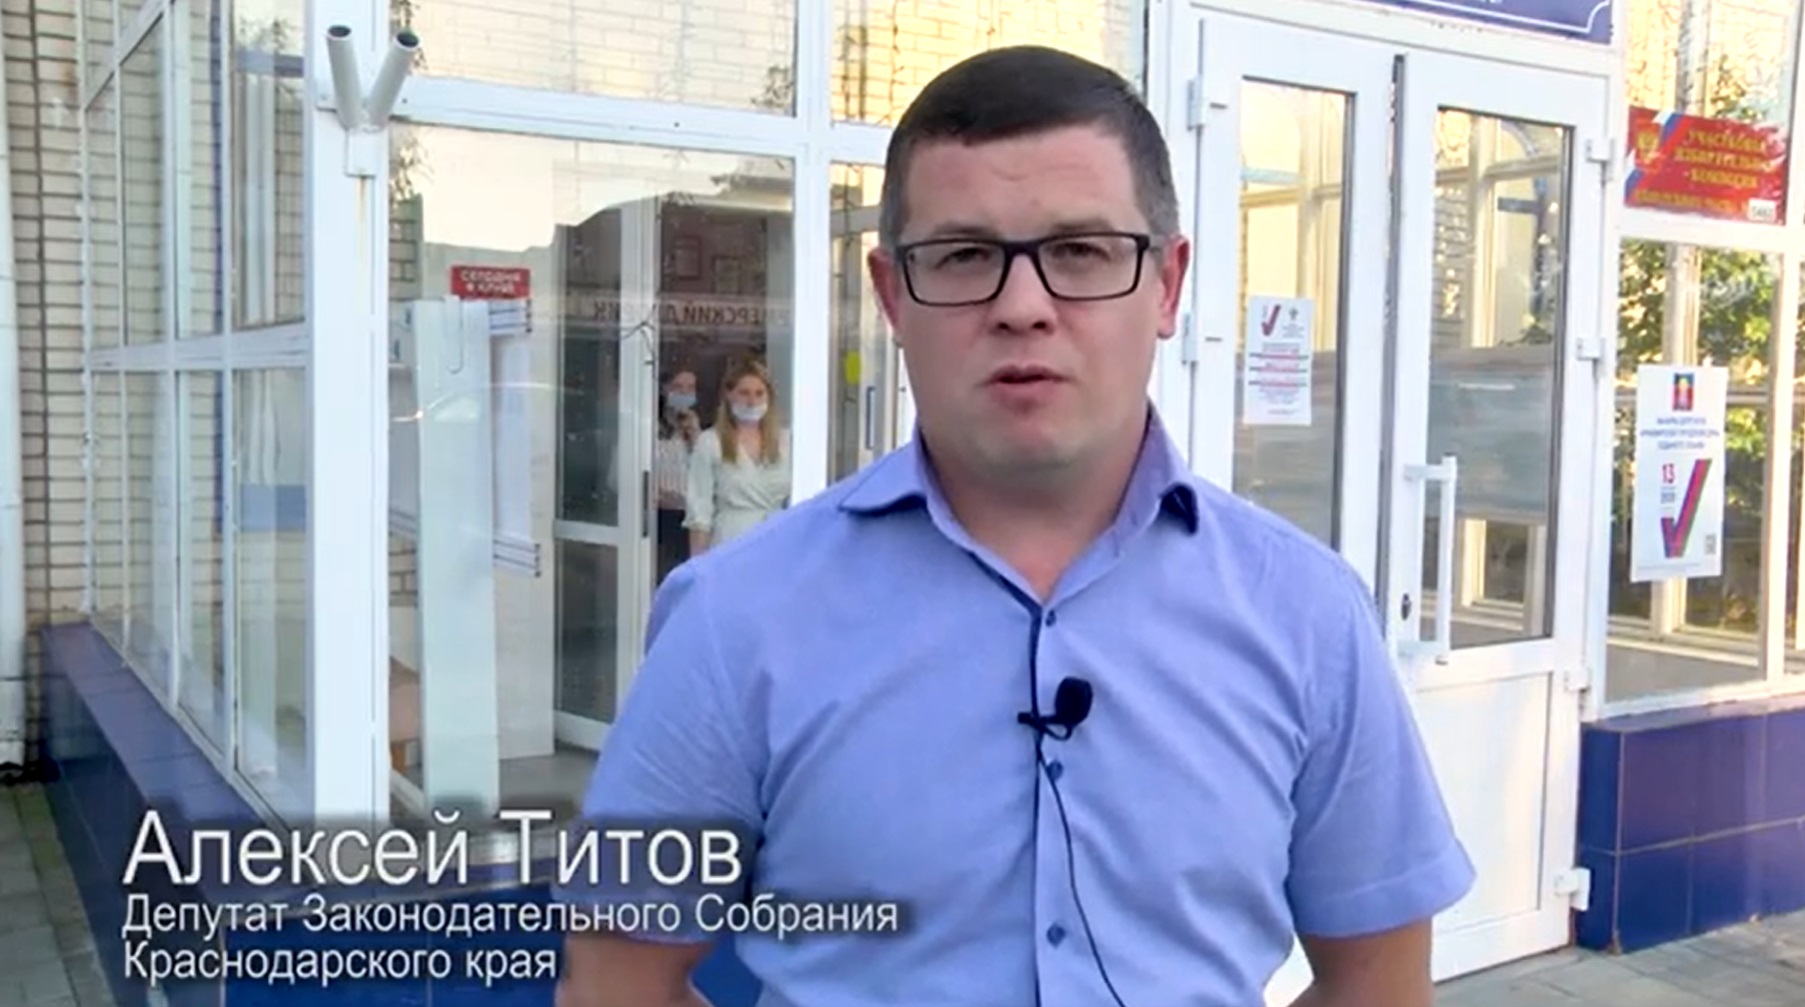 Алексей Титов: «Я свой выбор сделал!». В Армавире продолжаются две избирательные кампании